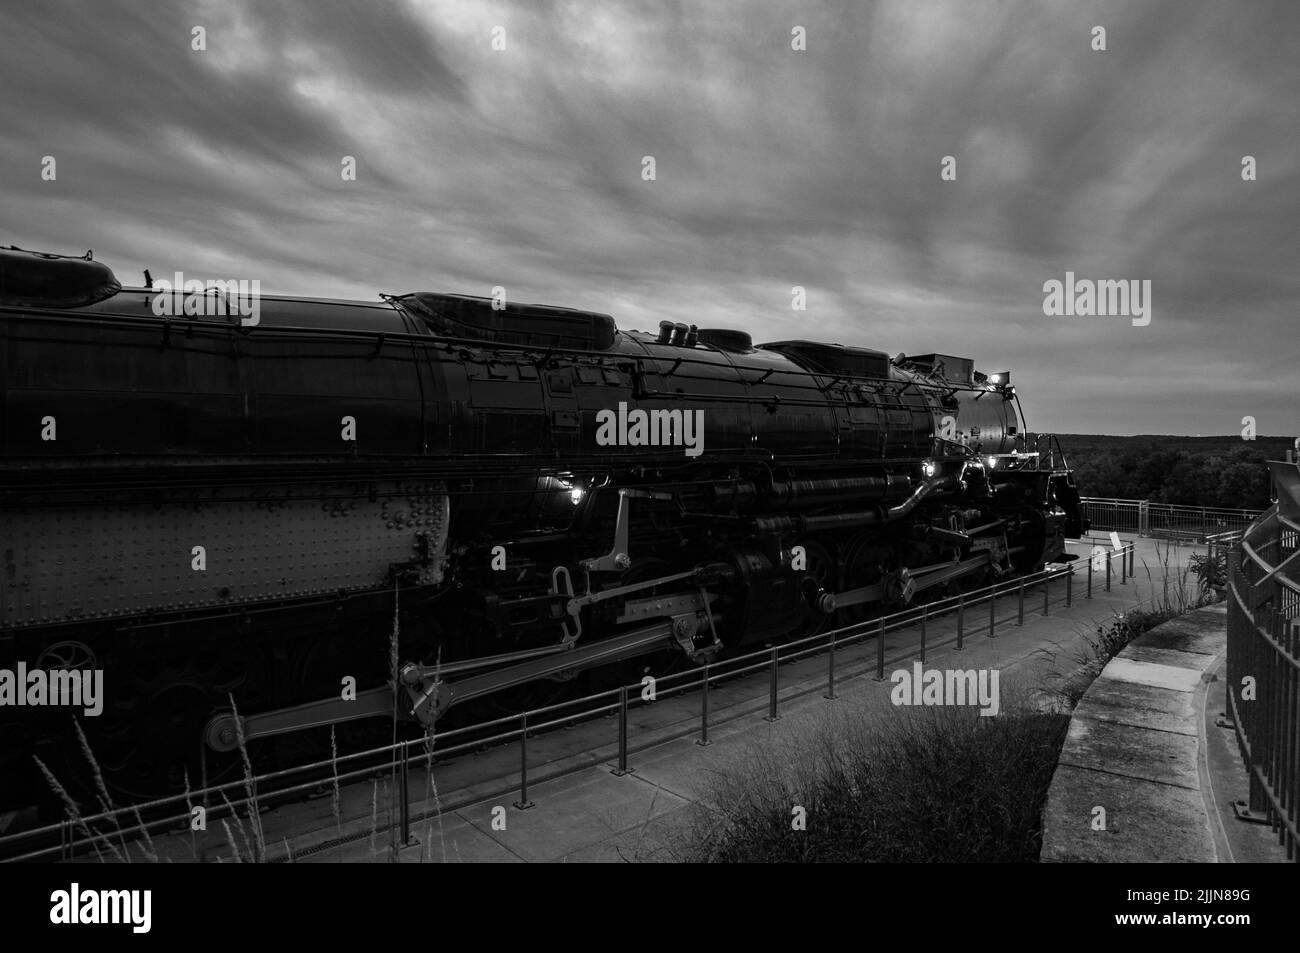 Una foto in scala di grigi della locomotiva Union Pacific Big Boy in mostra contro il cielo nuvoloso nel Nebraska, Stati Uniti Foto Stock